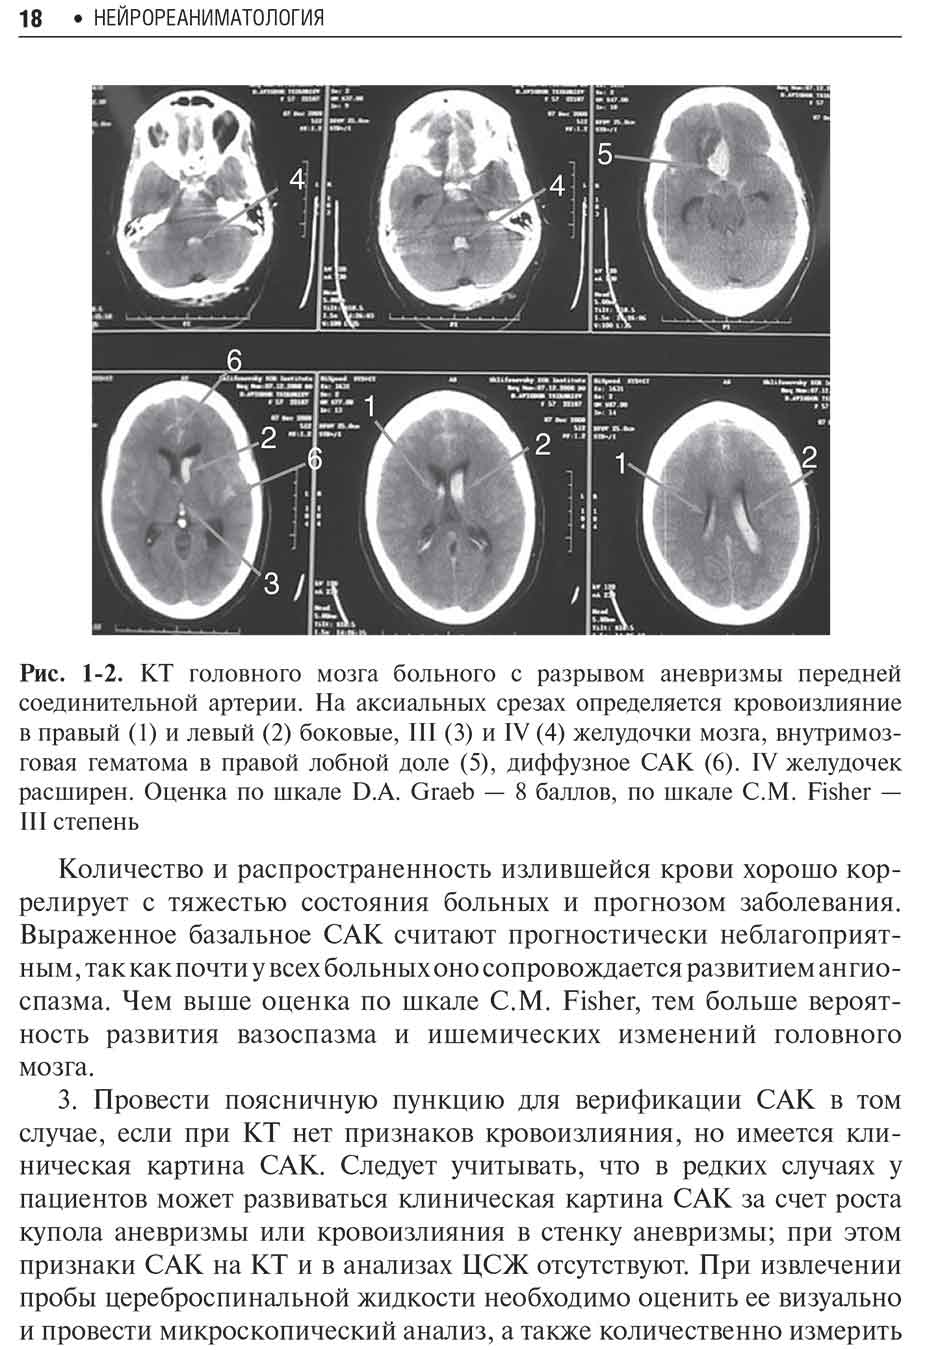 Рис. 1-2. КТ головного мозга больного с разрывом аневризмы